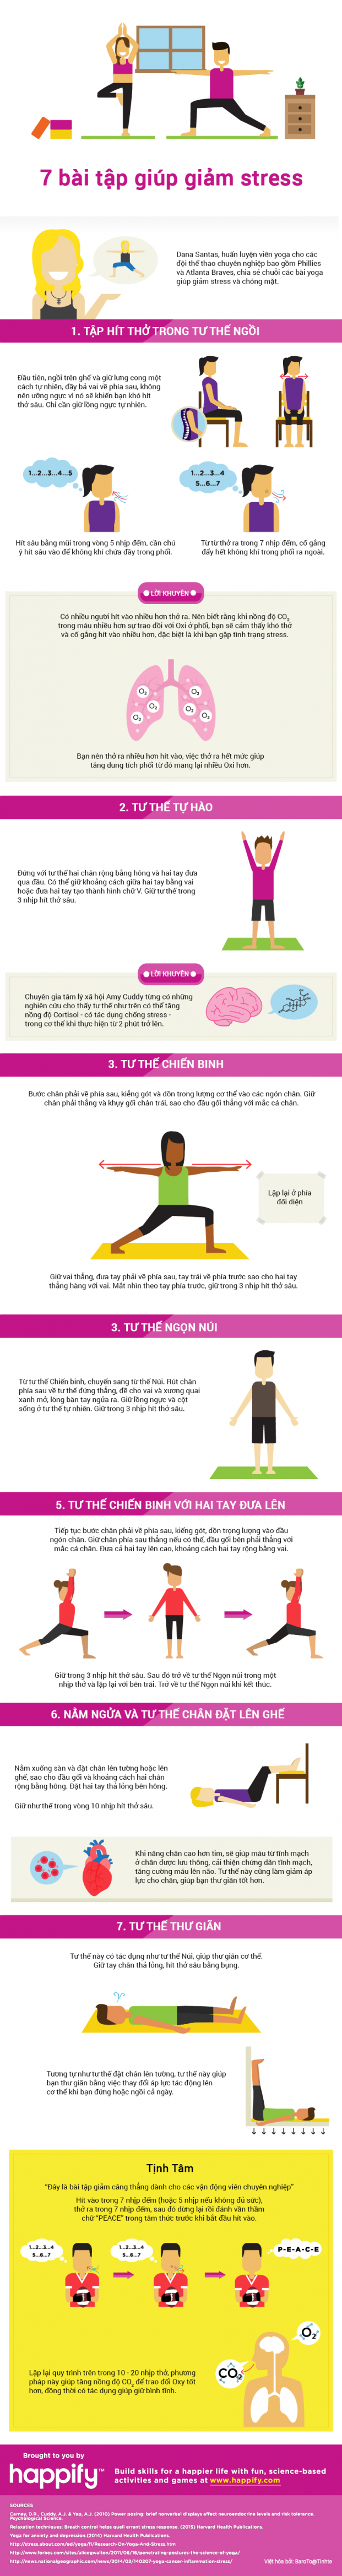 7 bài tập Yoga giảm stress khi làm việc đơn giản và hiệu quả 0